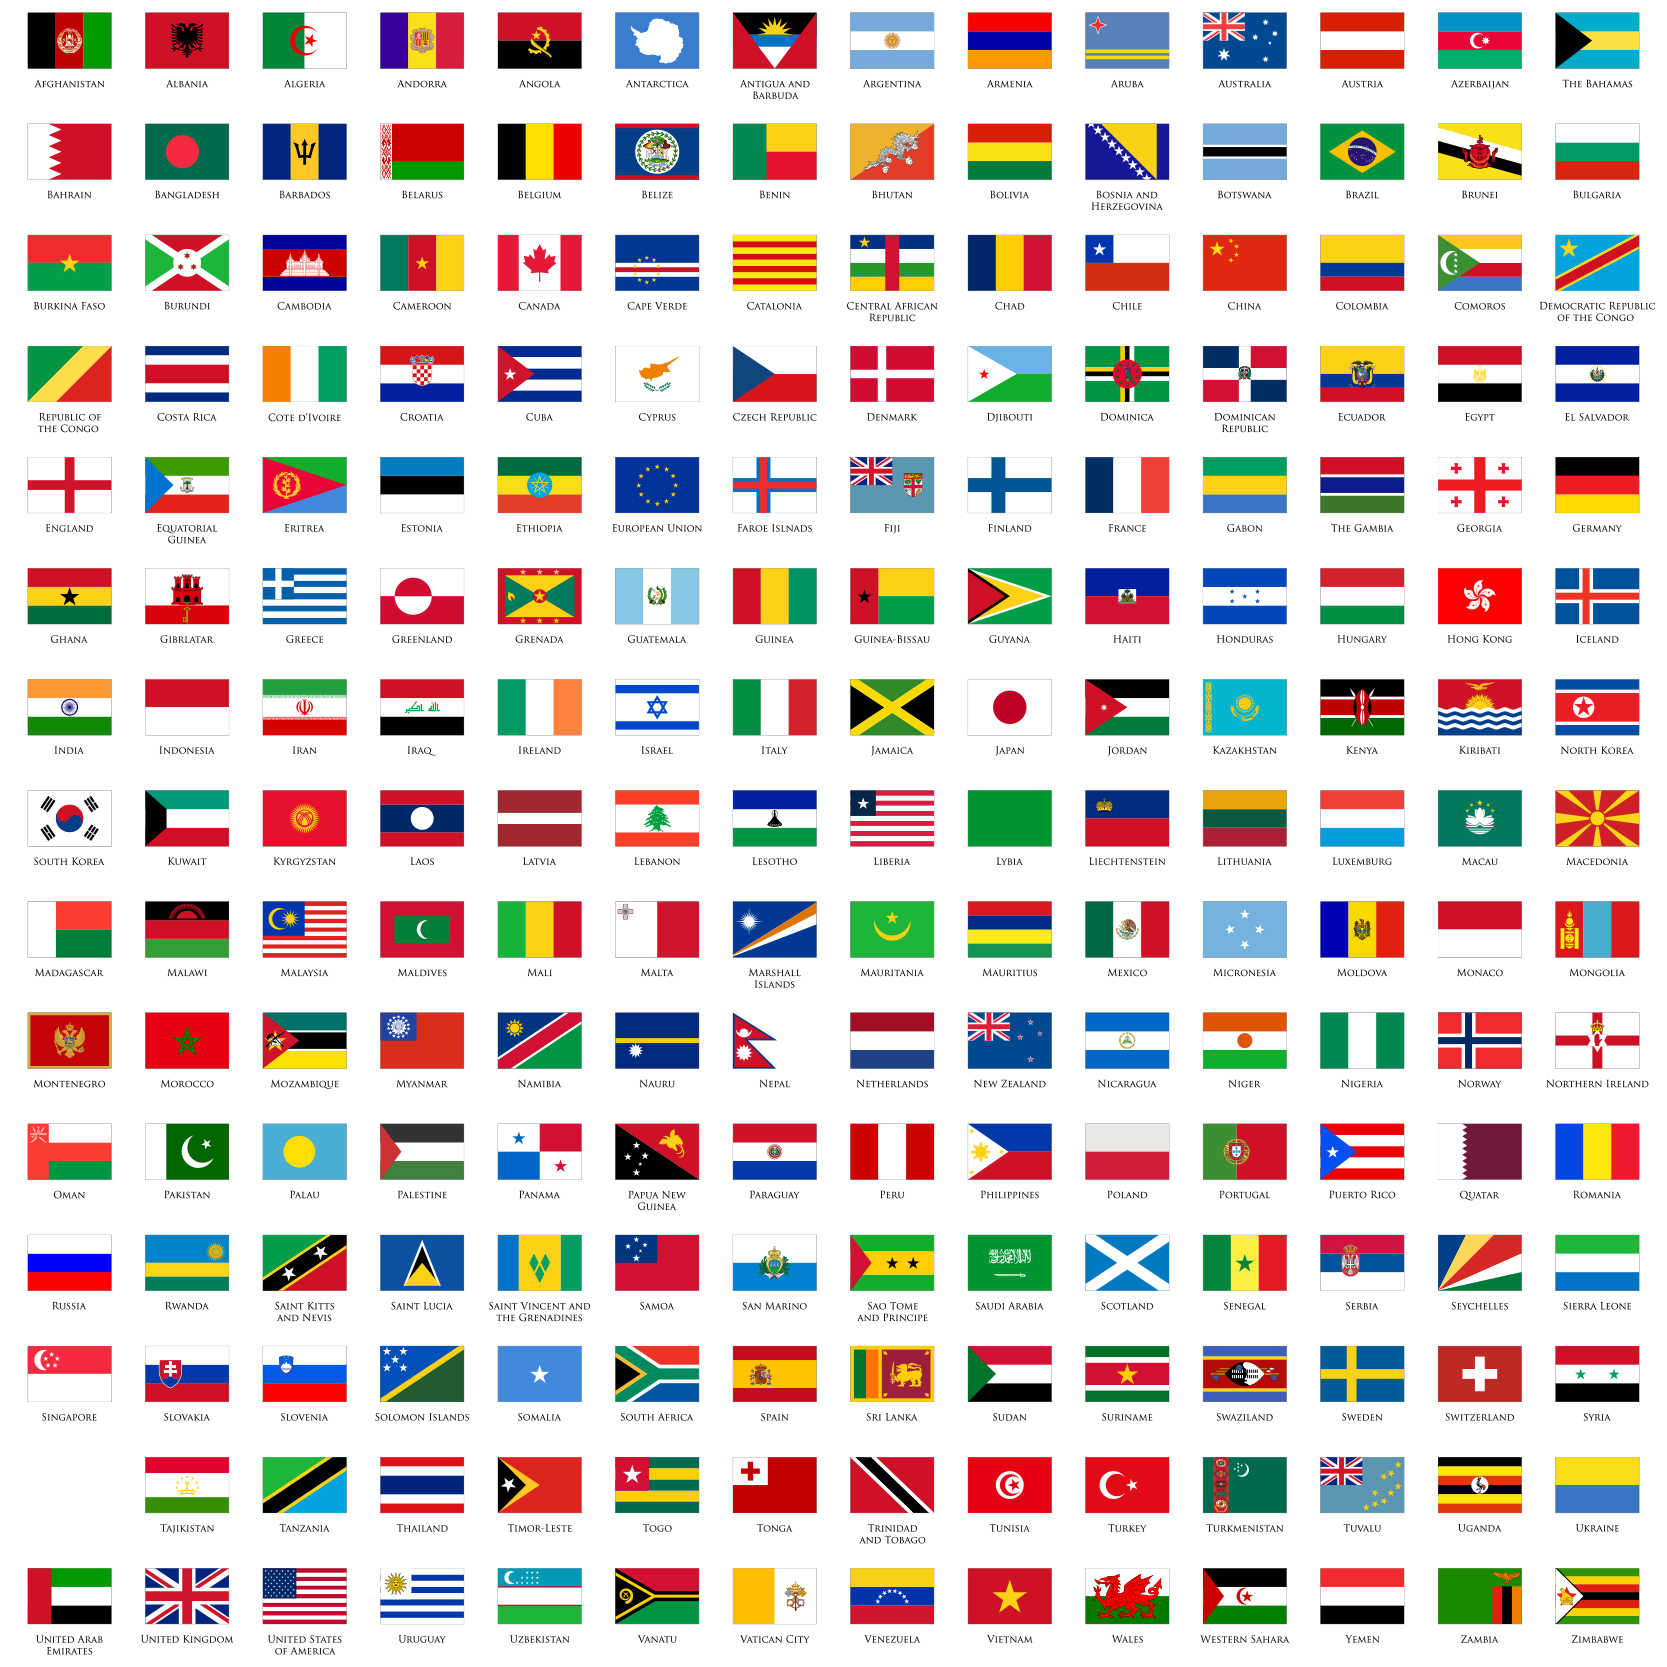 世界各国国旗国徽大全(10) - 世界政区地图 - 地理教师网